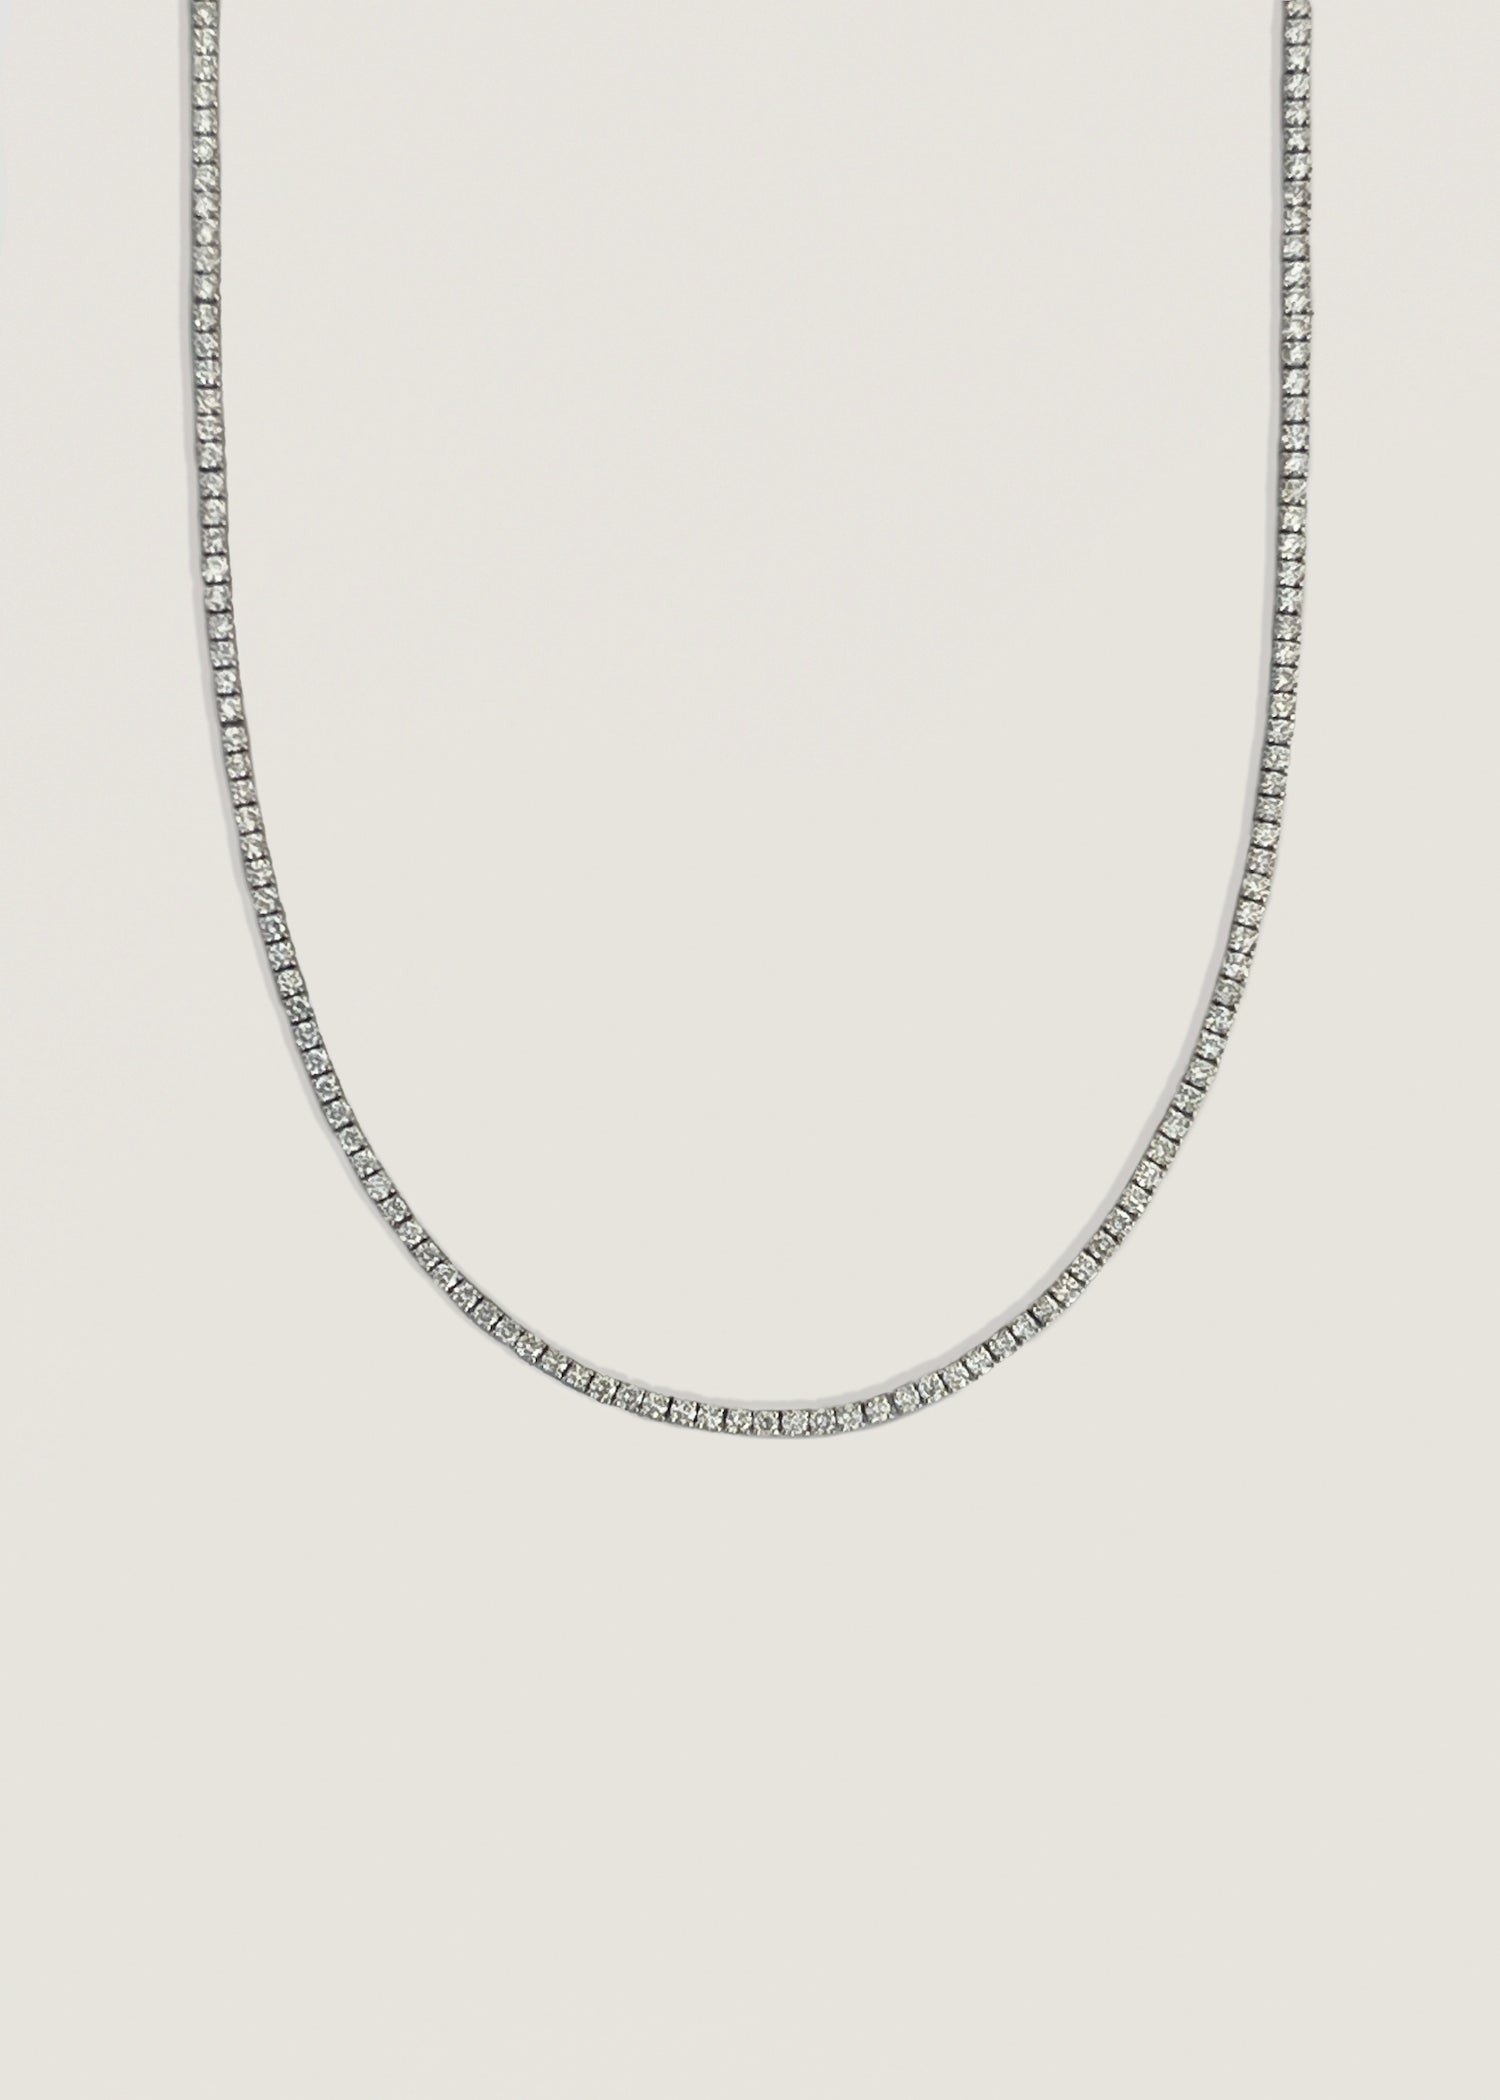 alt="Diana Diamond Tennis Necklace"